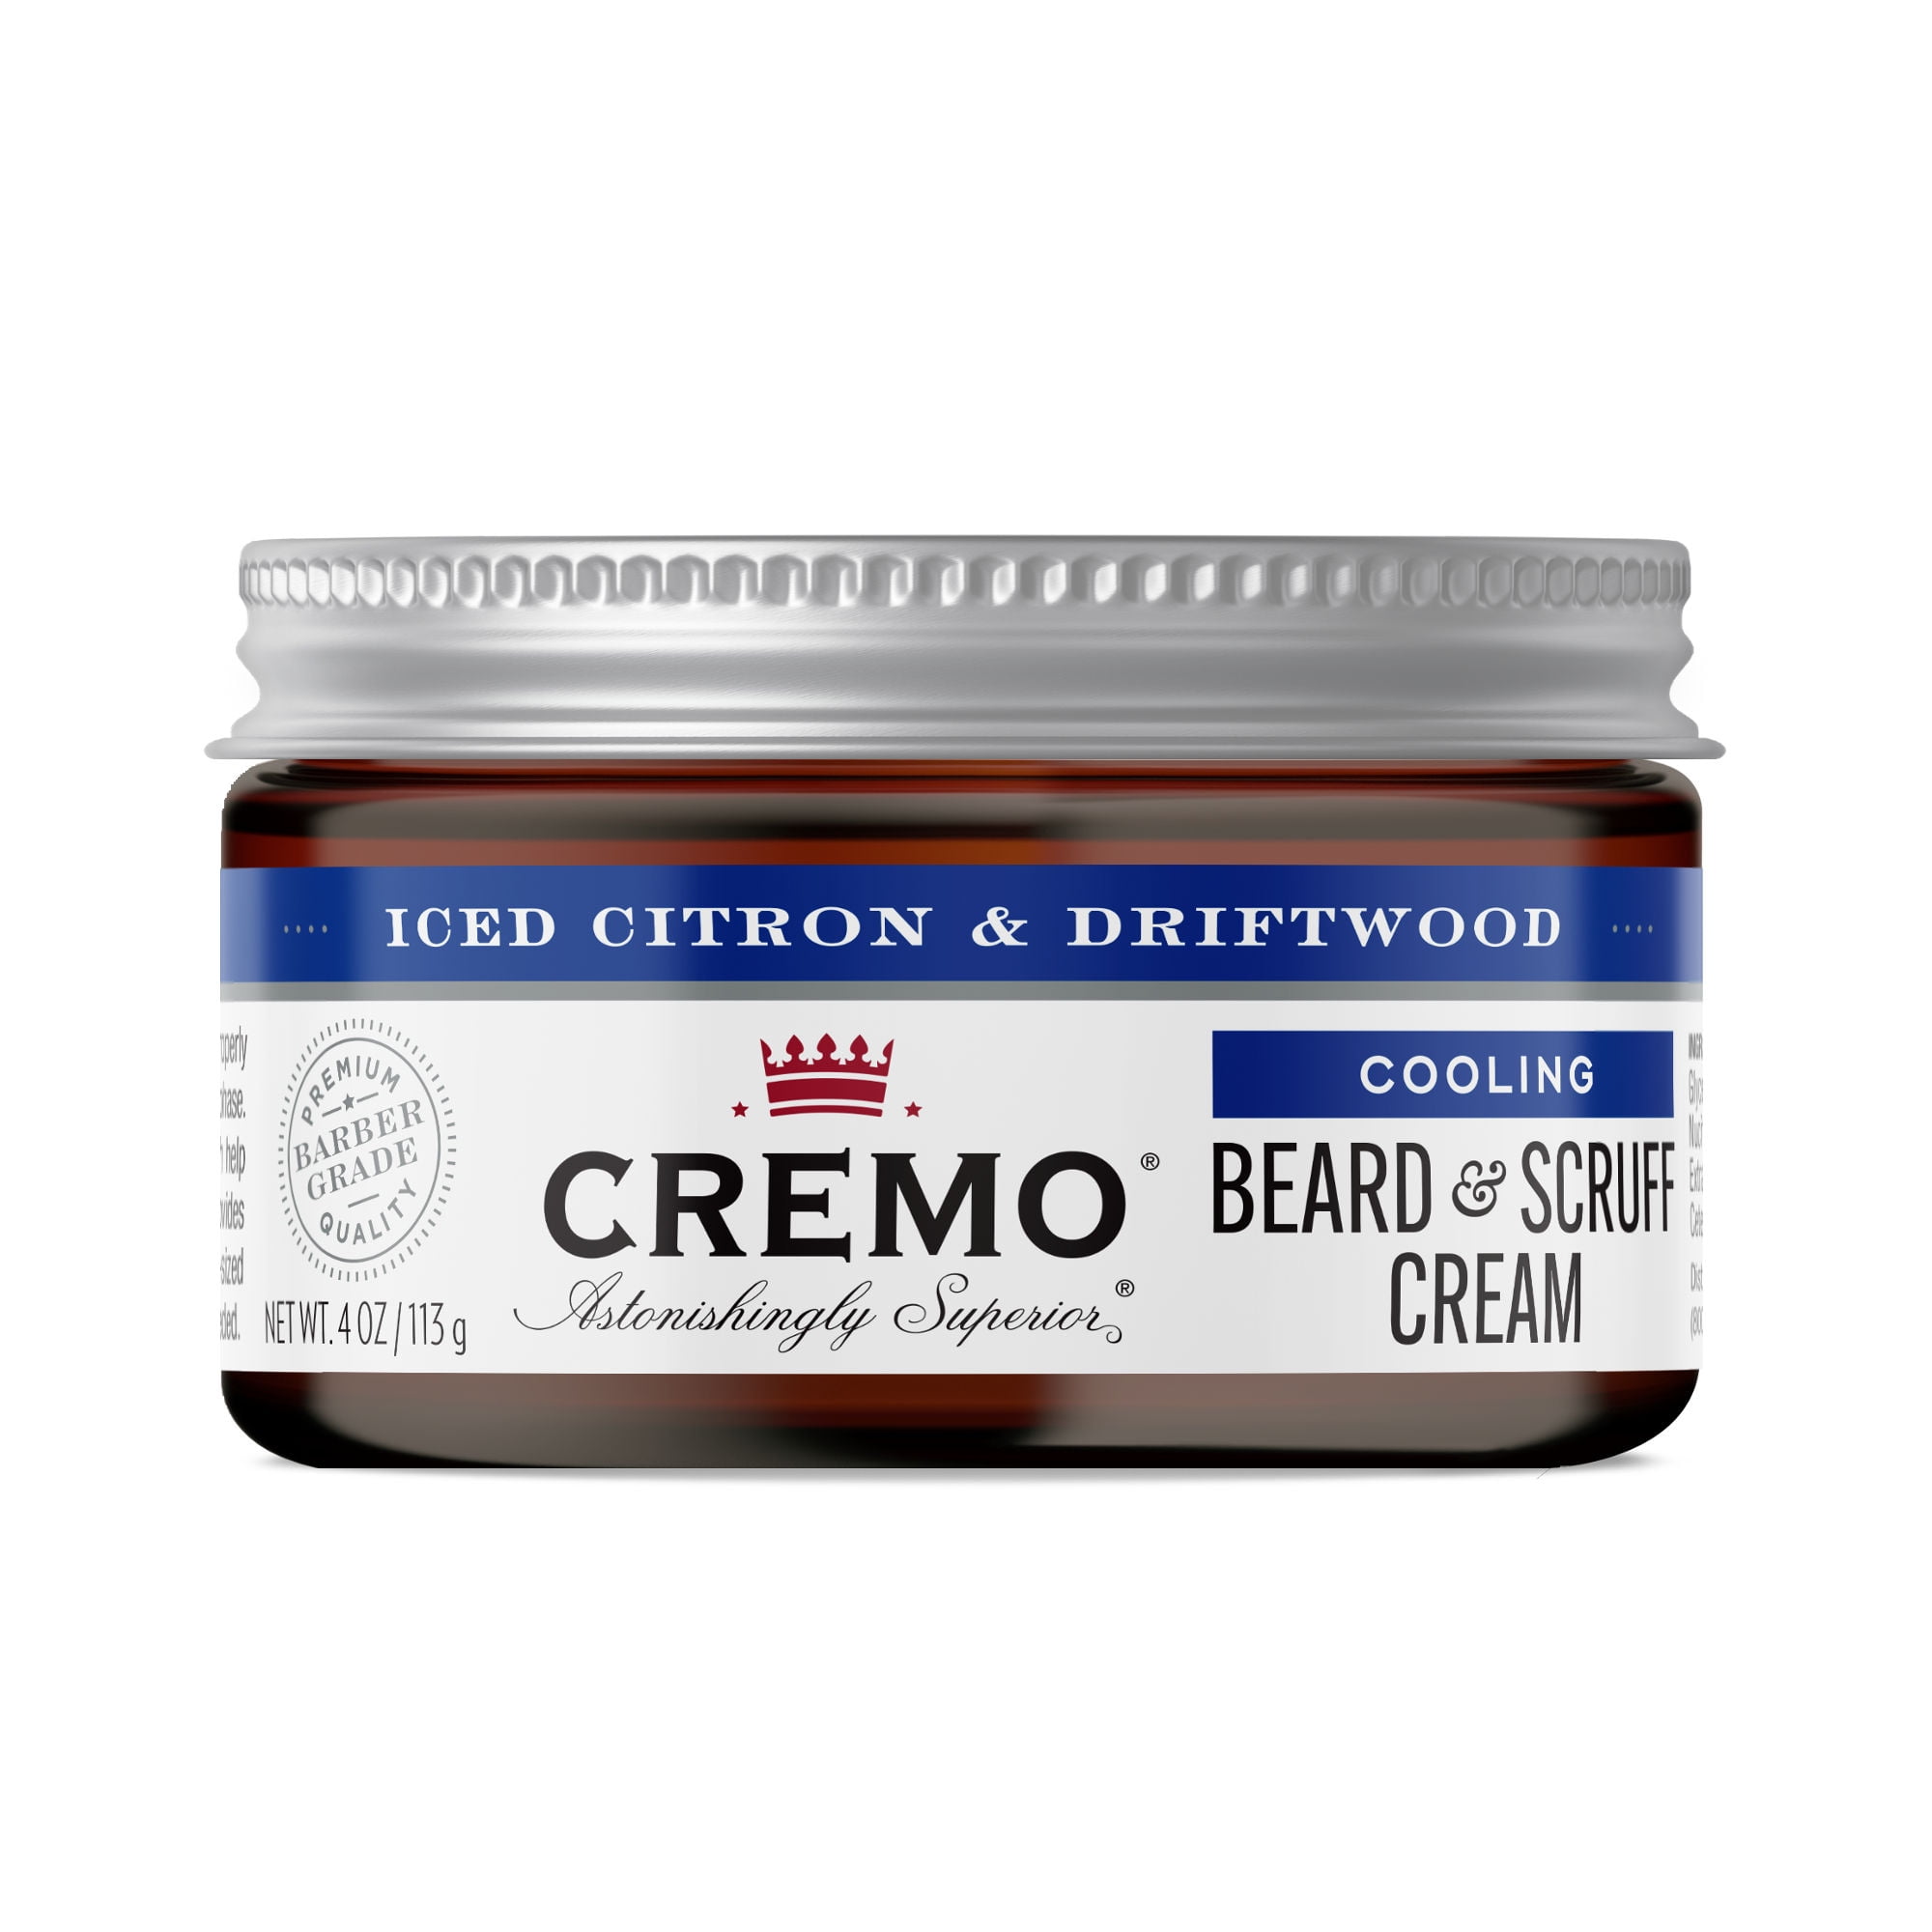 Cremo Beard & Scruff Cream Cooling 4oz